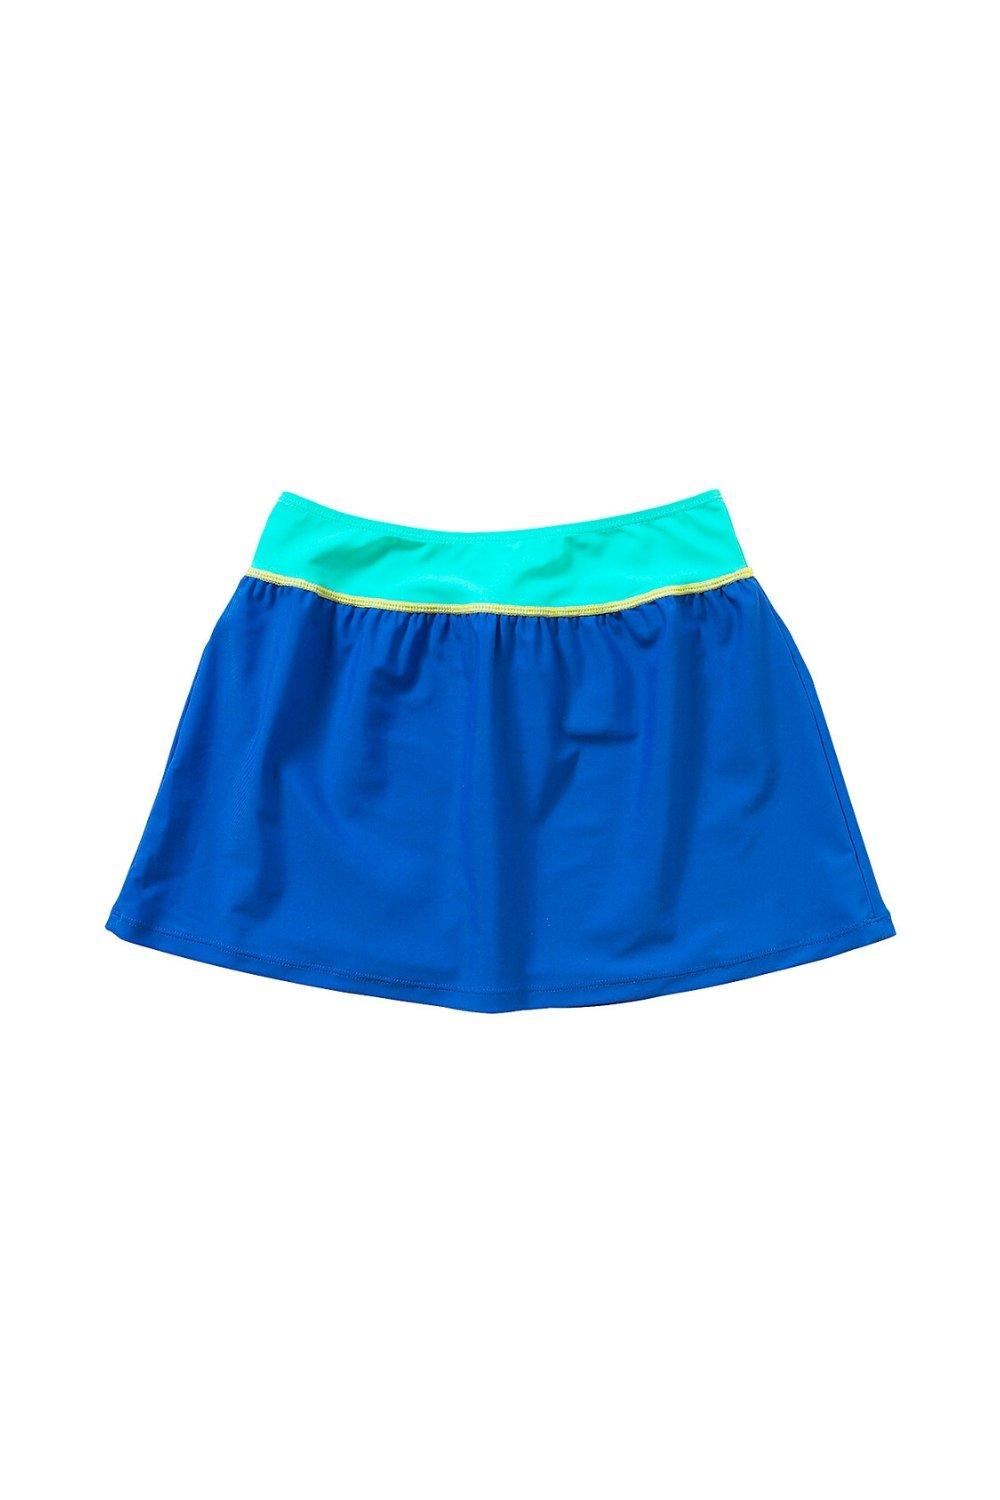 Sporty Cover Up Swim Skirt